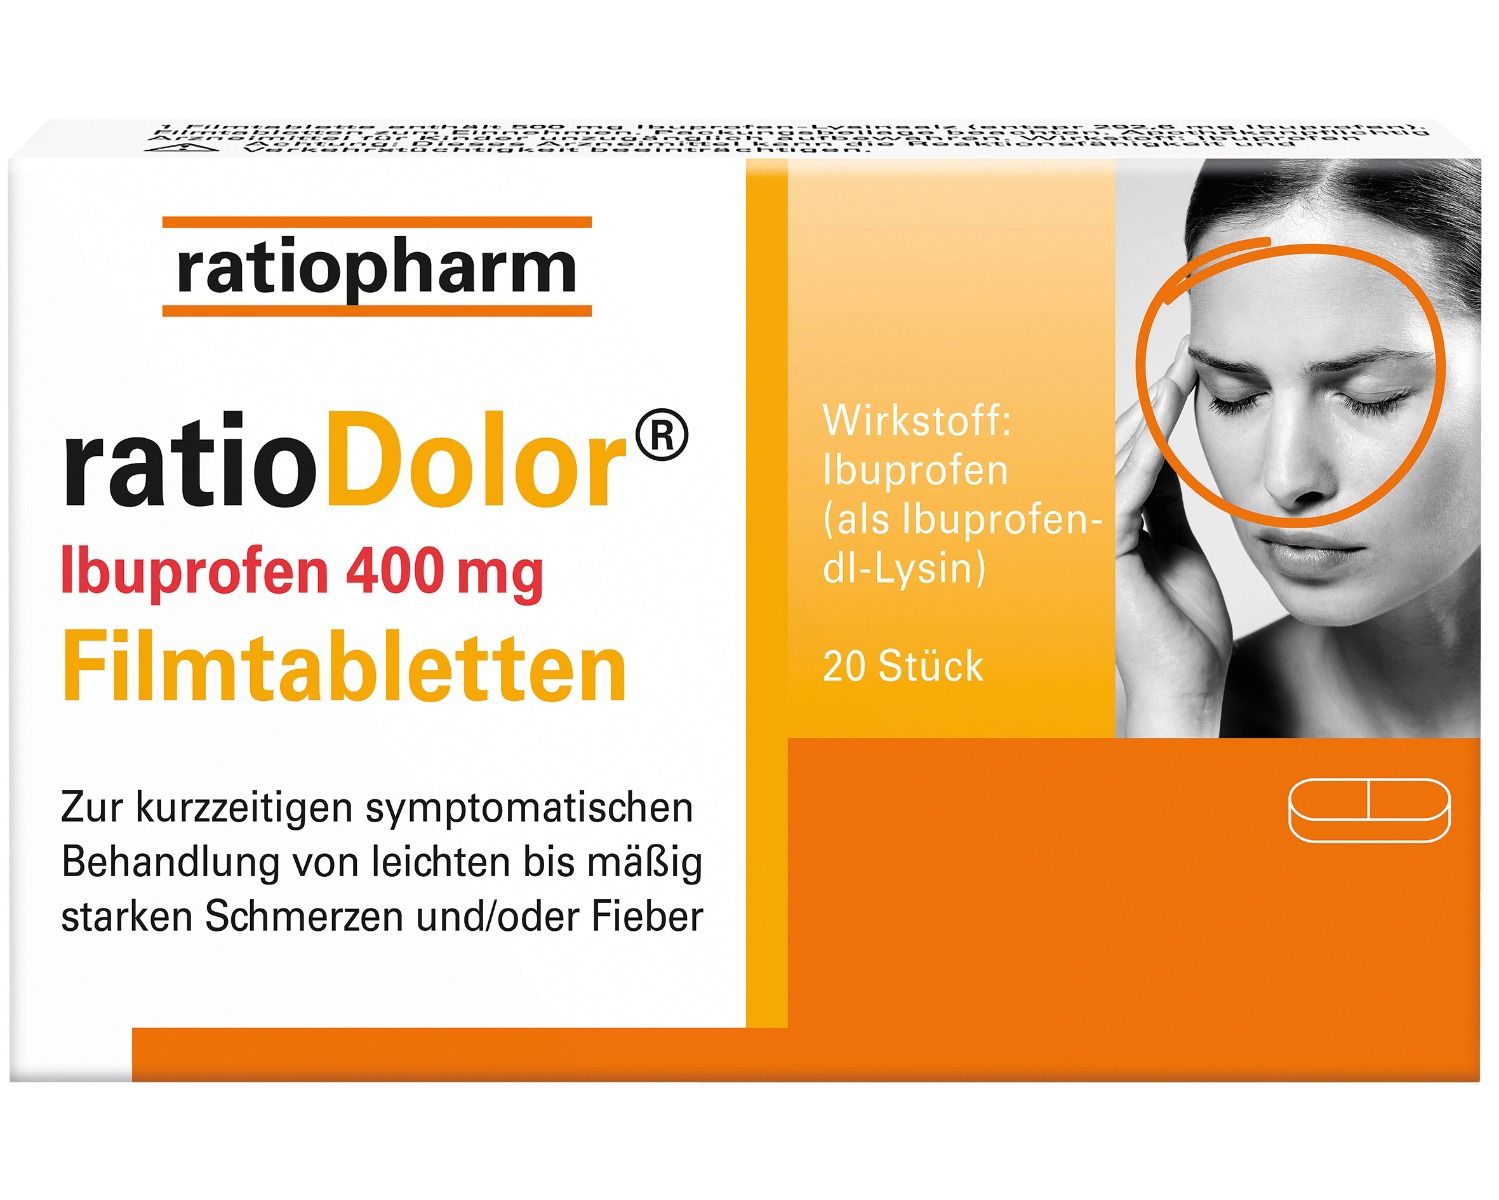 Abbildung ratioDolor Ibuprofen 400 mg Filmtabletten